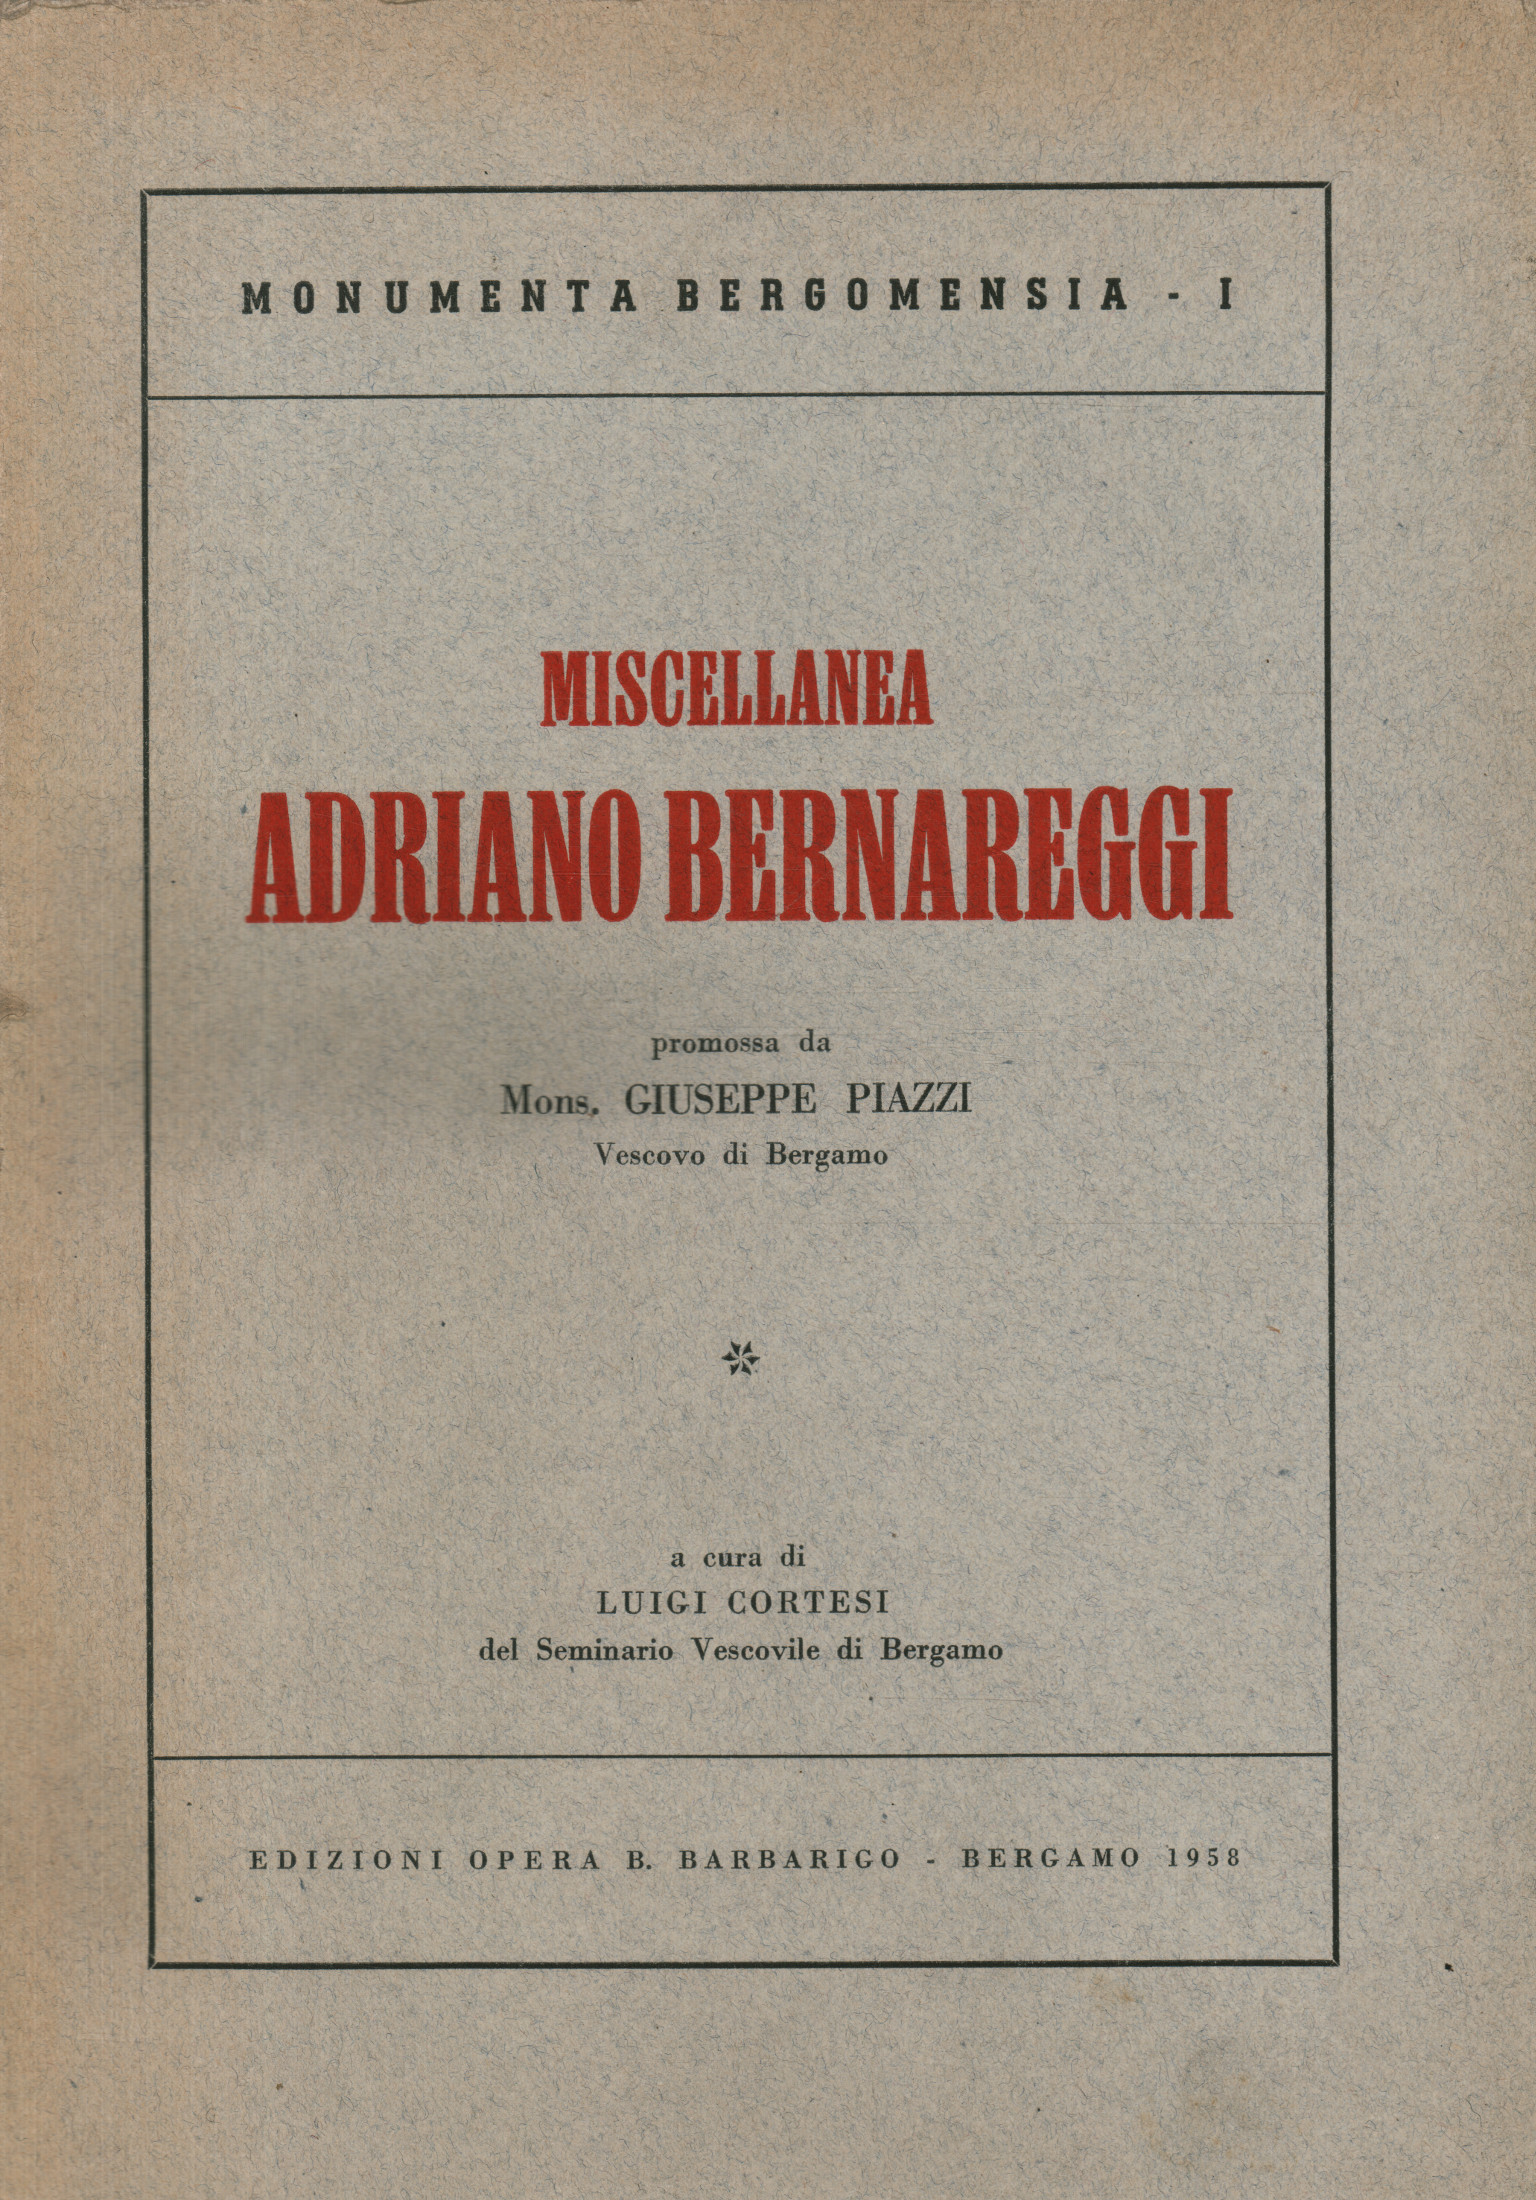 Miscellaneous Adriano Bernareggi